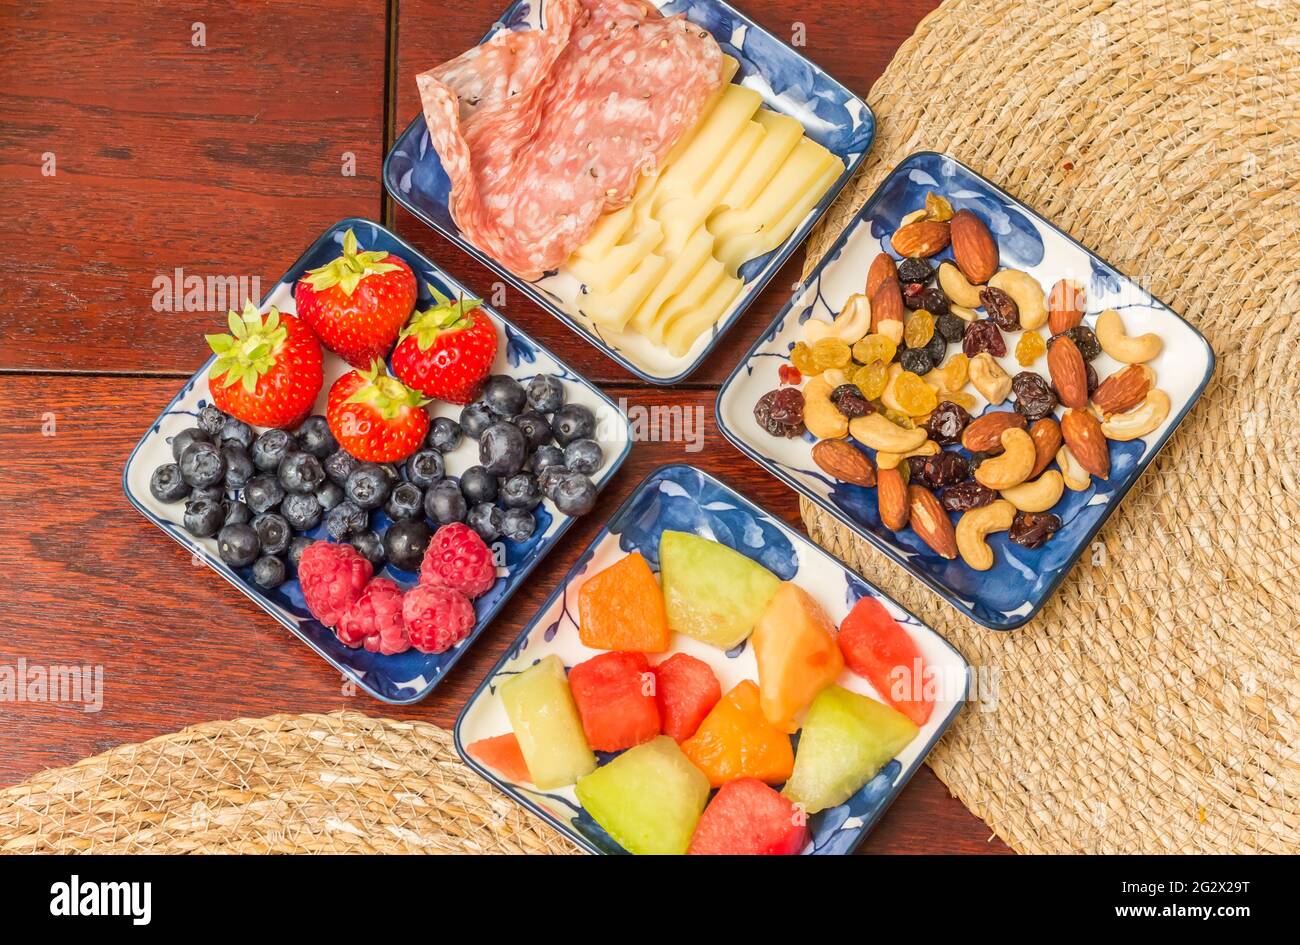 Colazione sana con frutta fresca, noci, spianata romana e formaggio Foto Stock